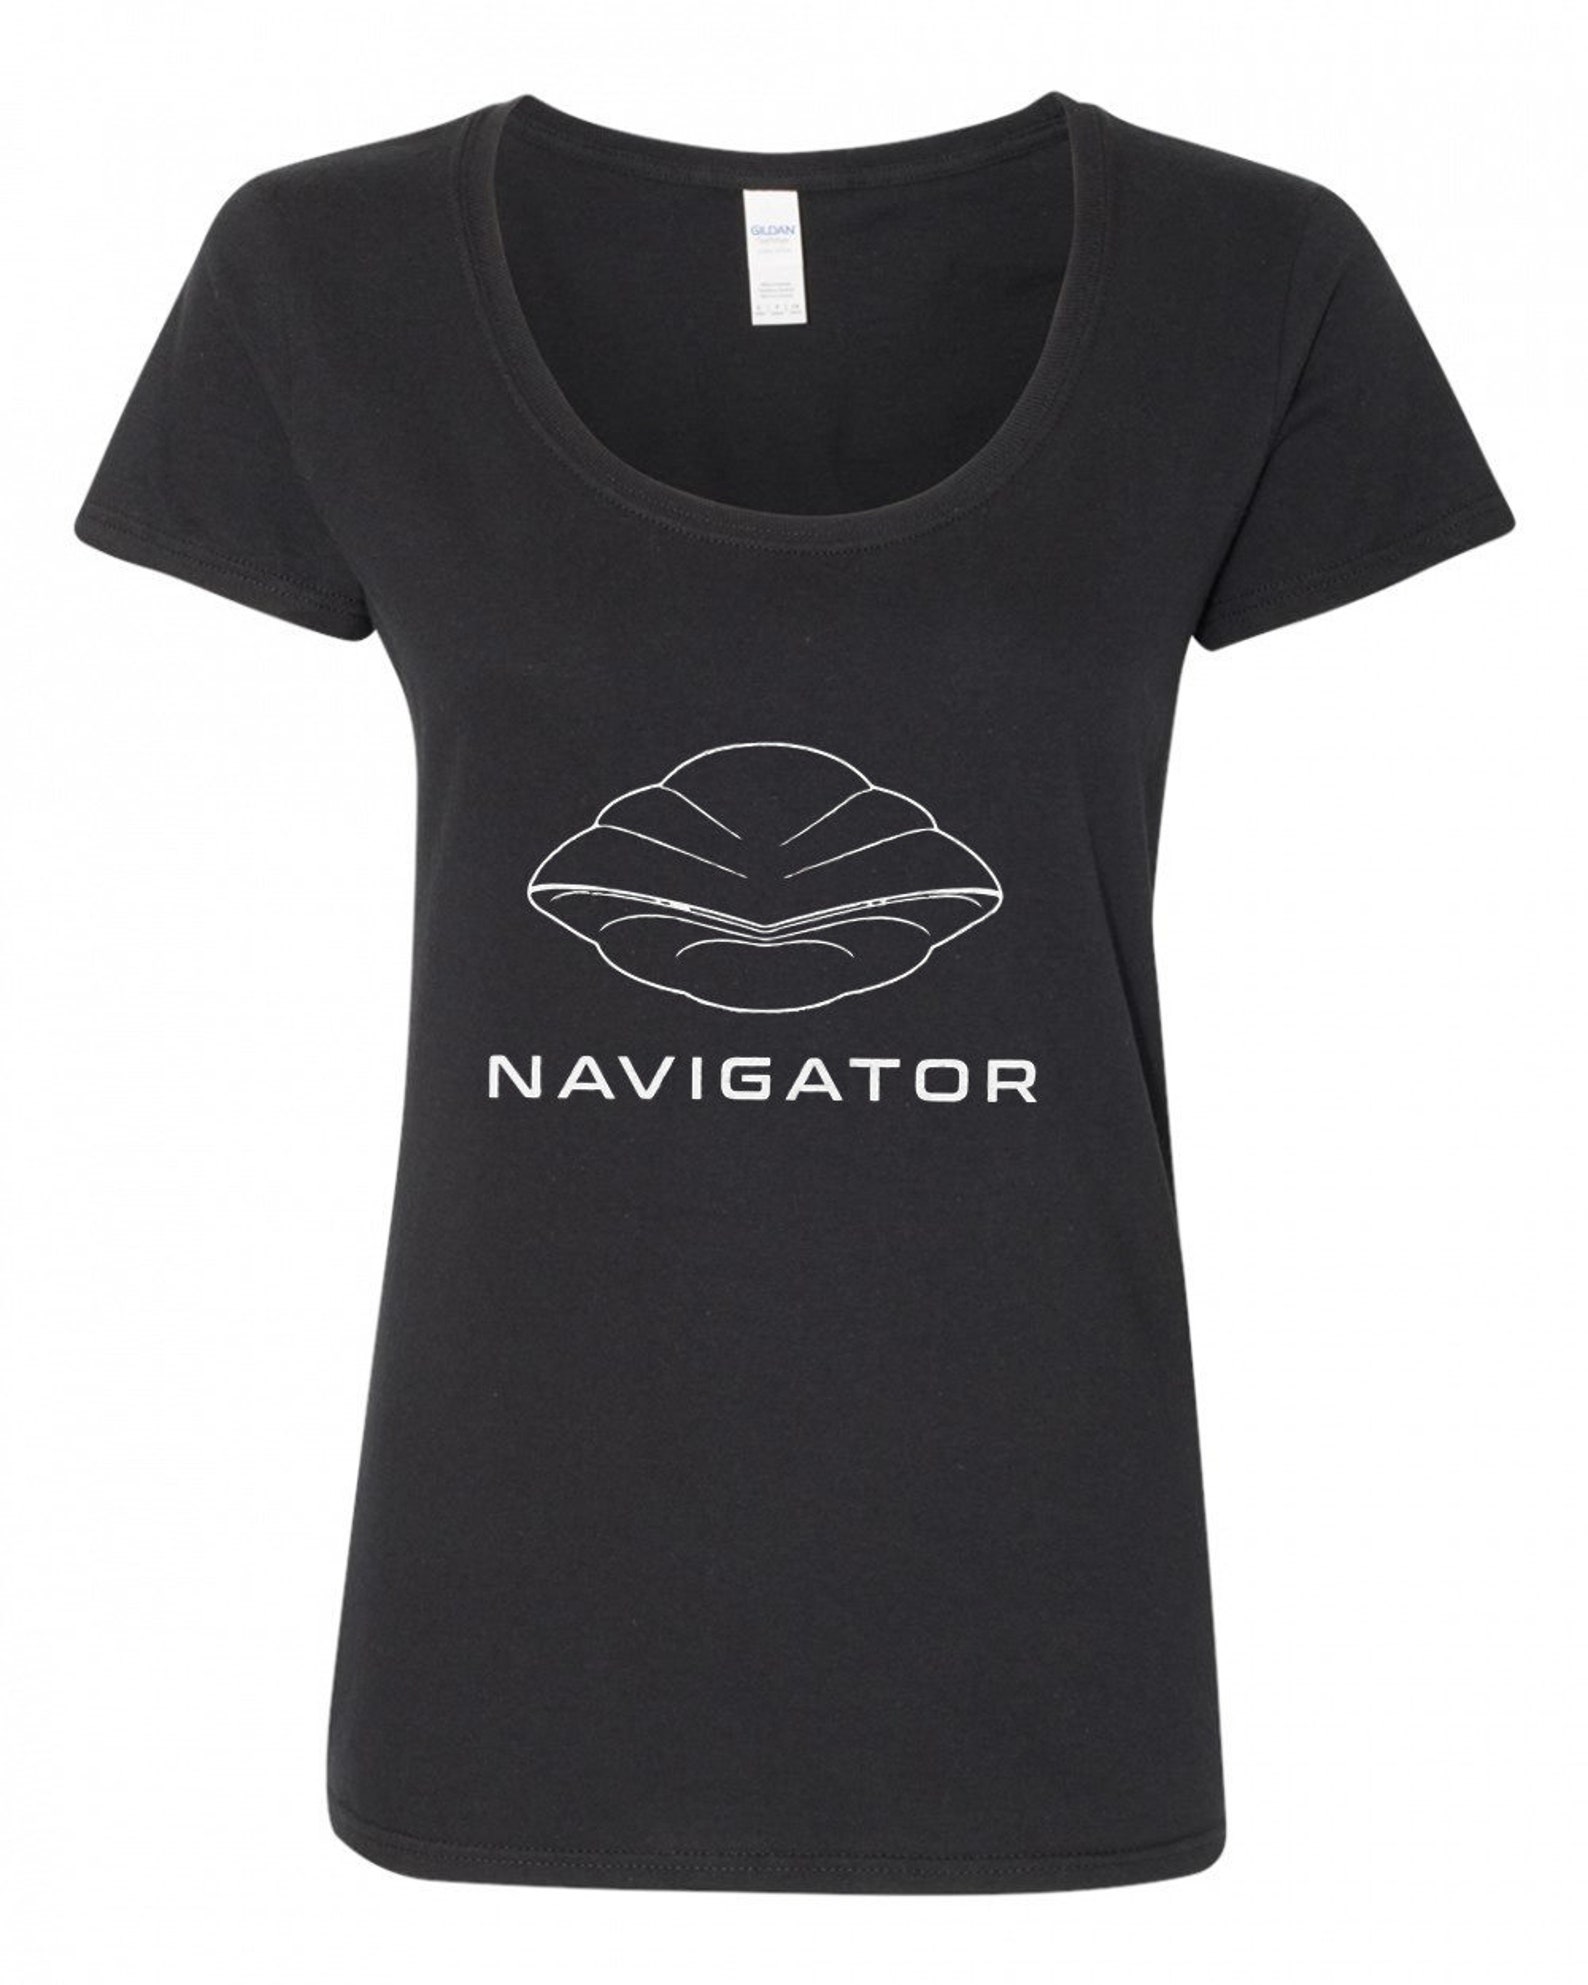 Flight of the Navigator 80's T-shirt - Etsy